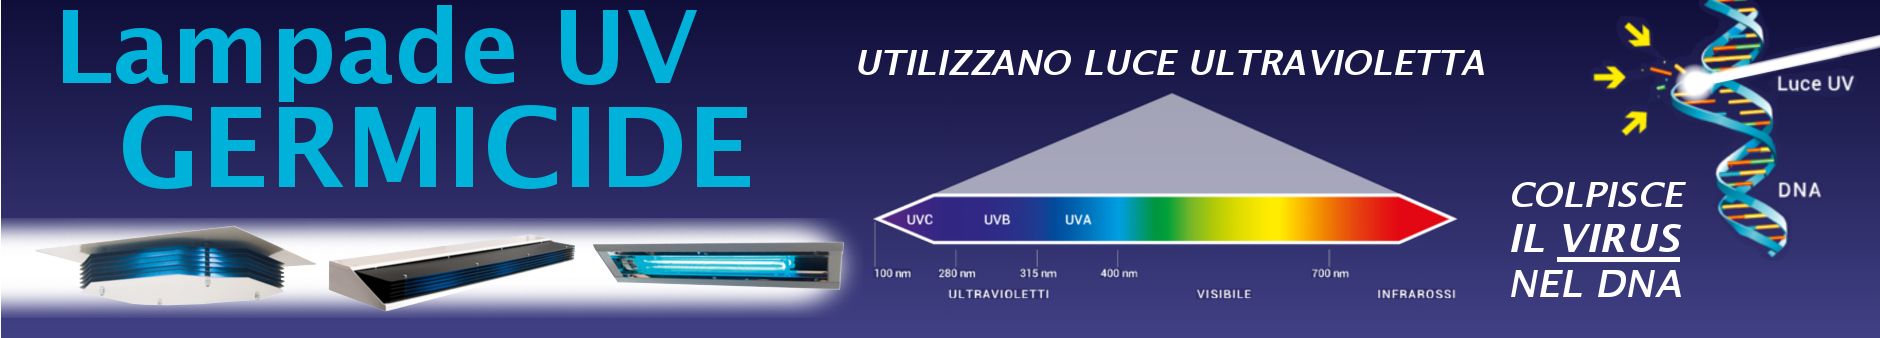 Lampade UV sanificanti